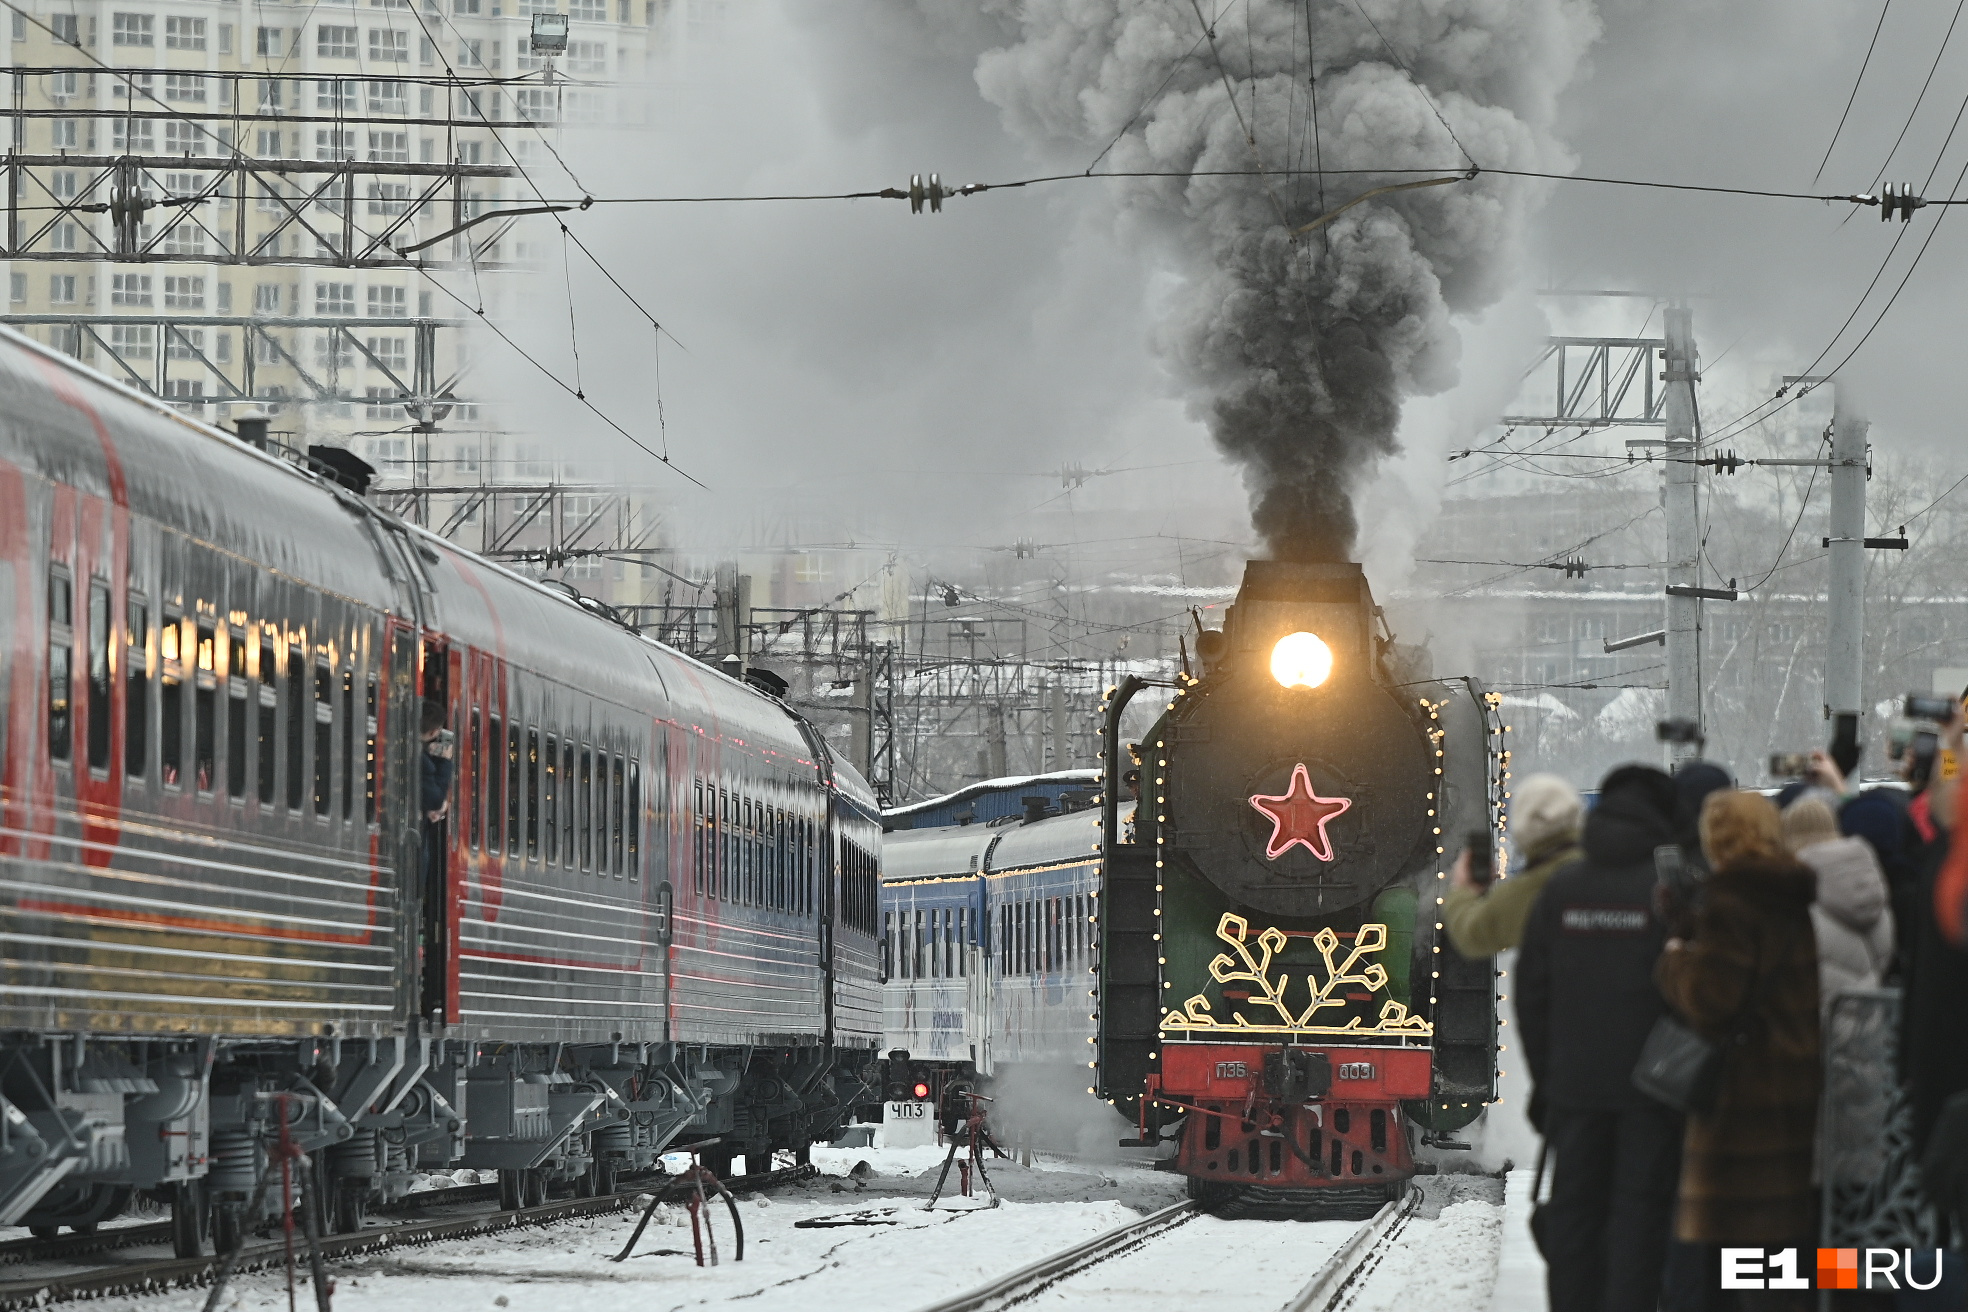 Сказка и немного политики: как Екатеринбург встречал Деда Мороза в пару и дыму